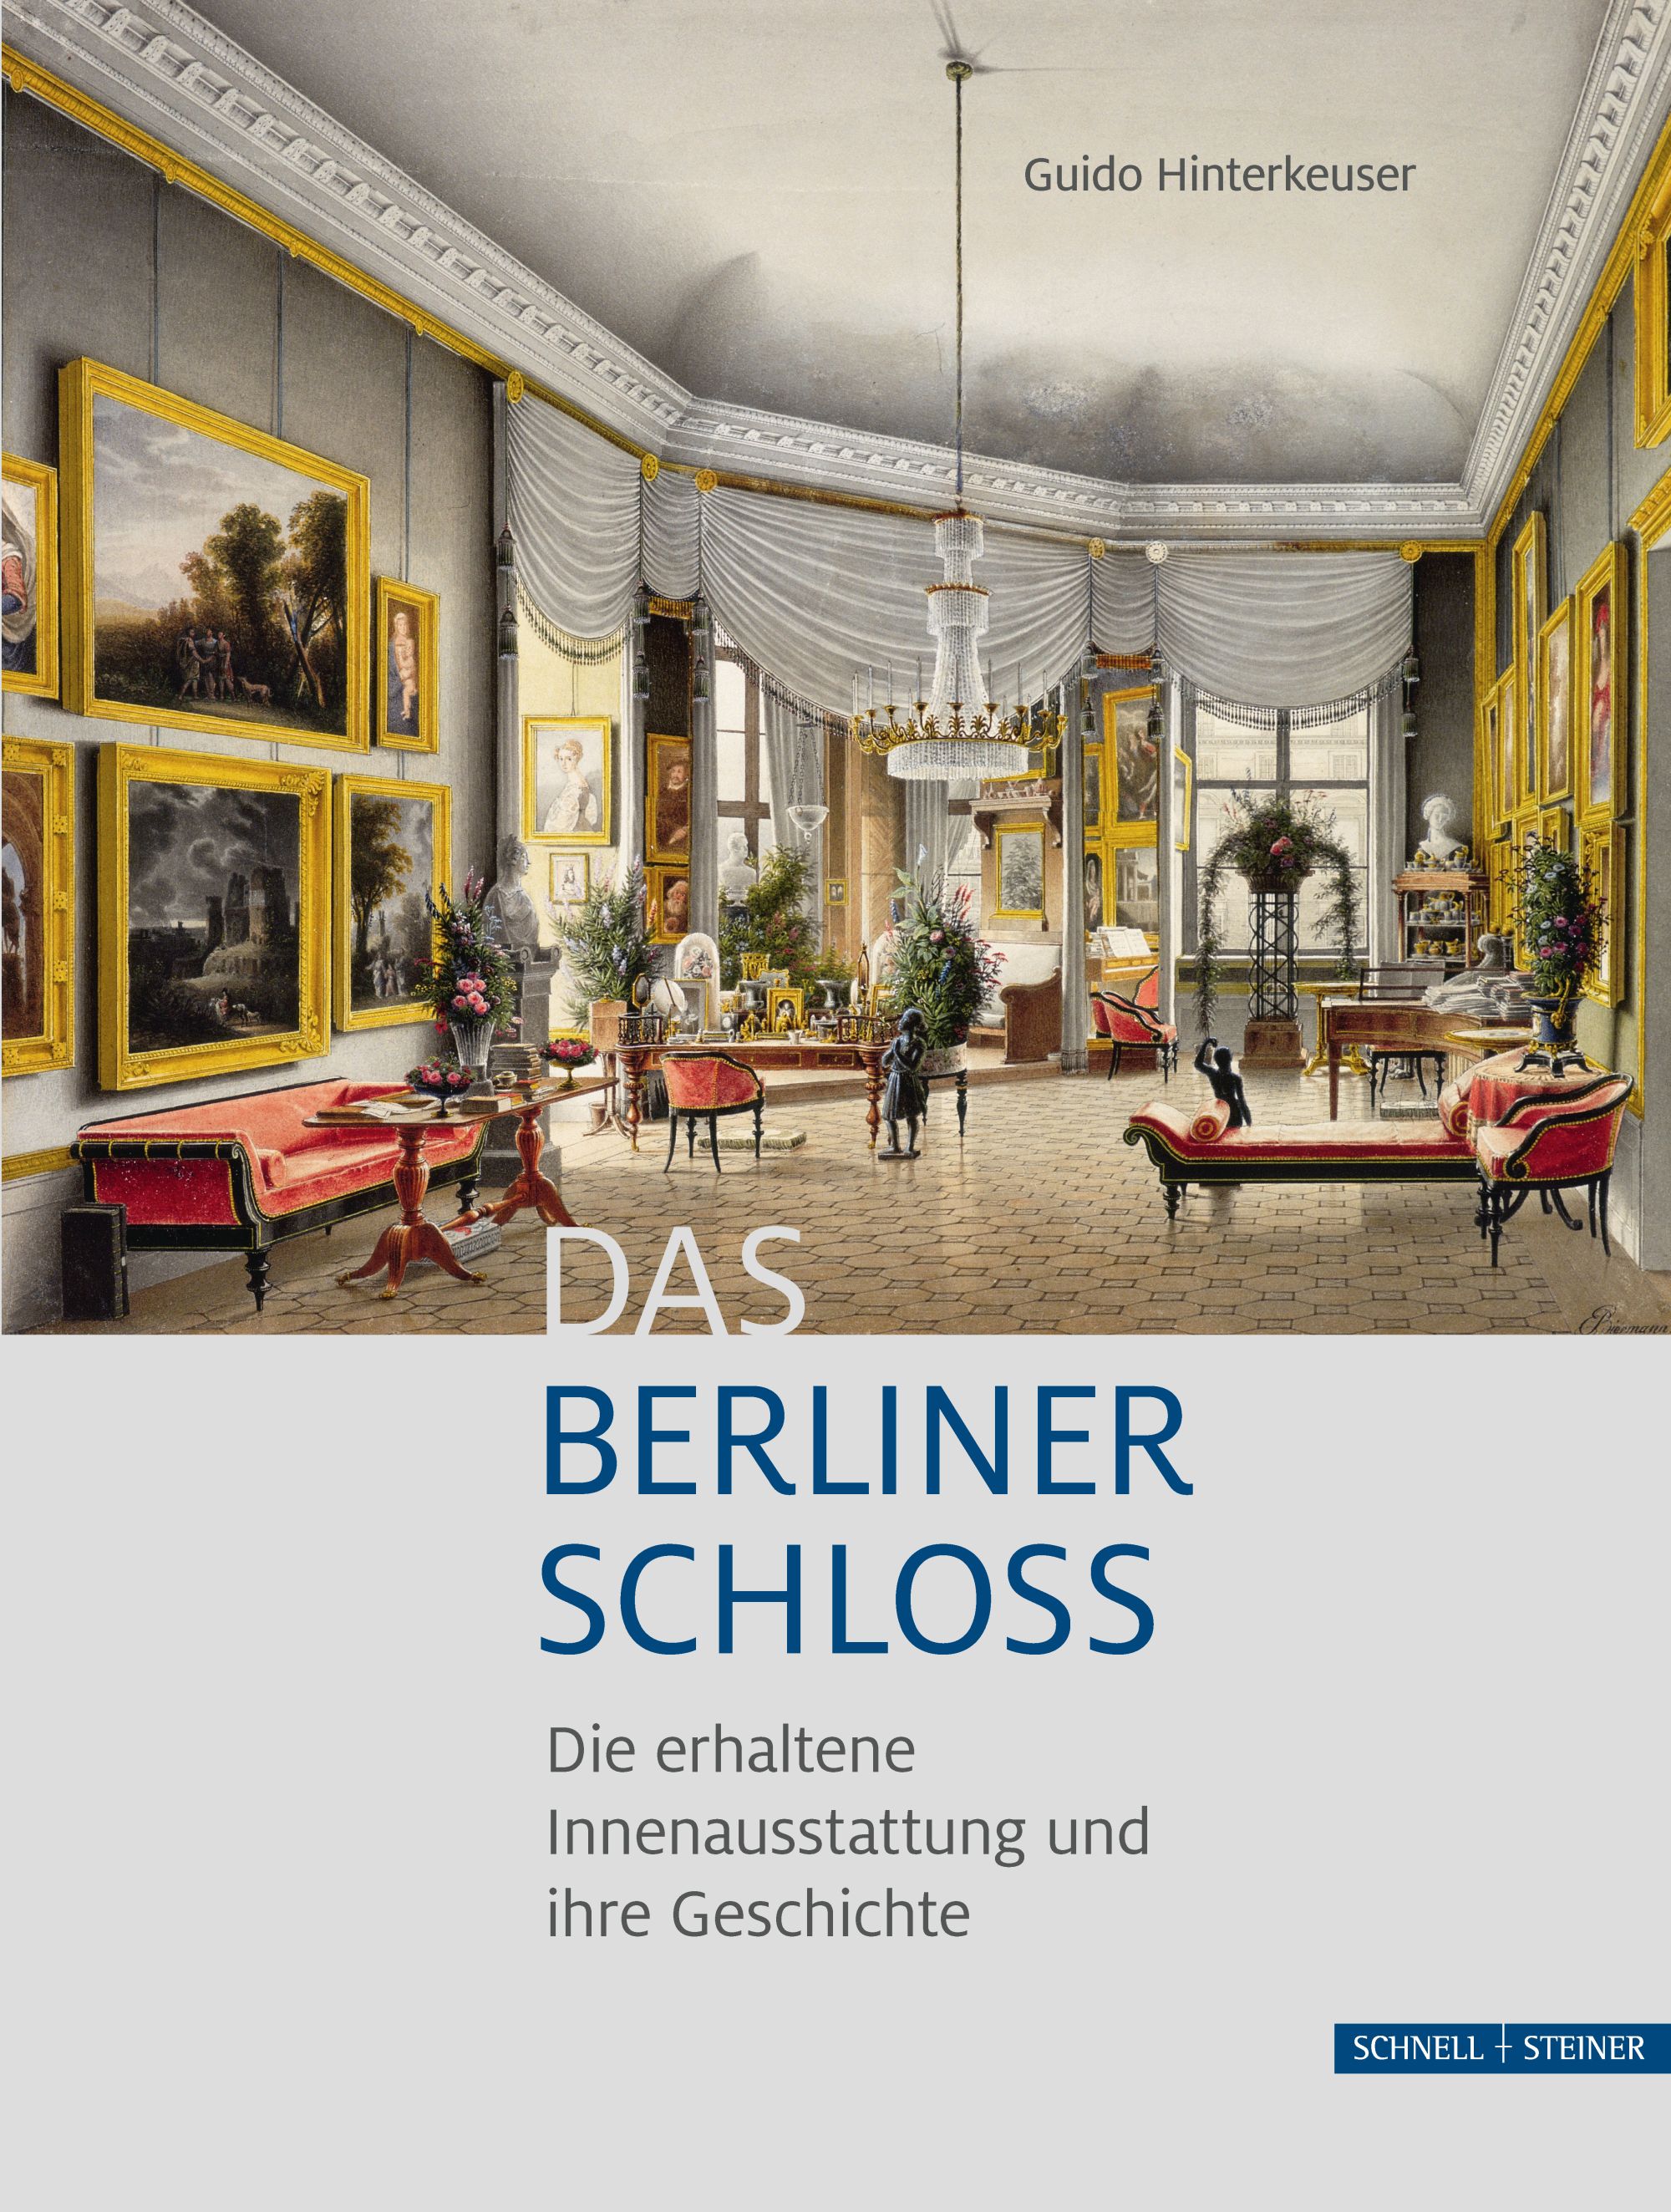 Das Berliner Schloss - Die erhaltene Innenausstattung und ihre